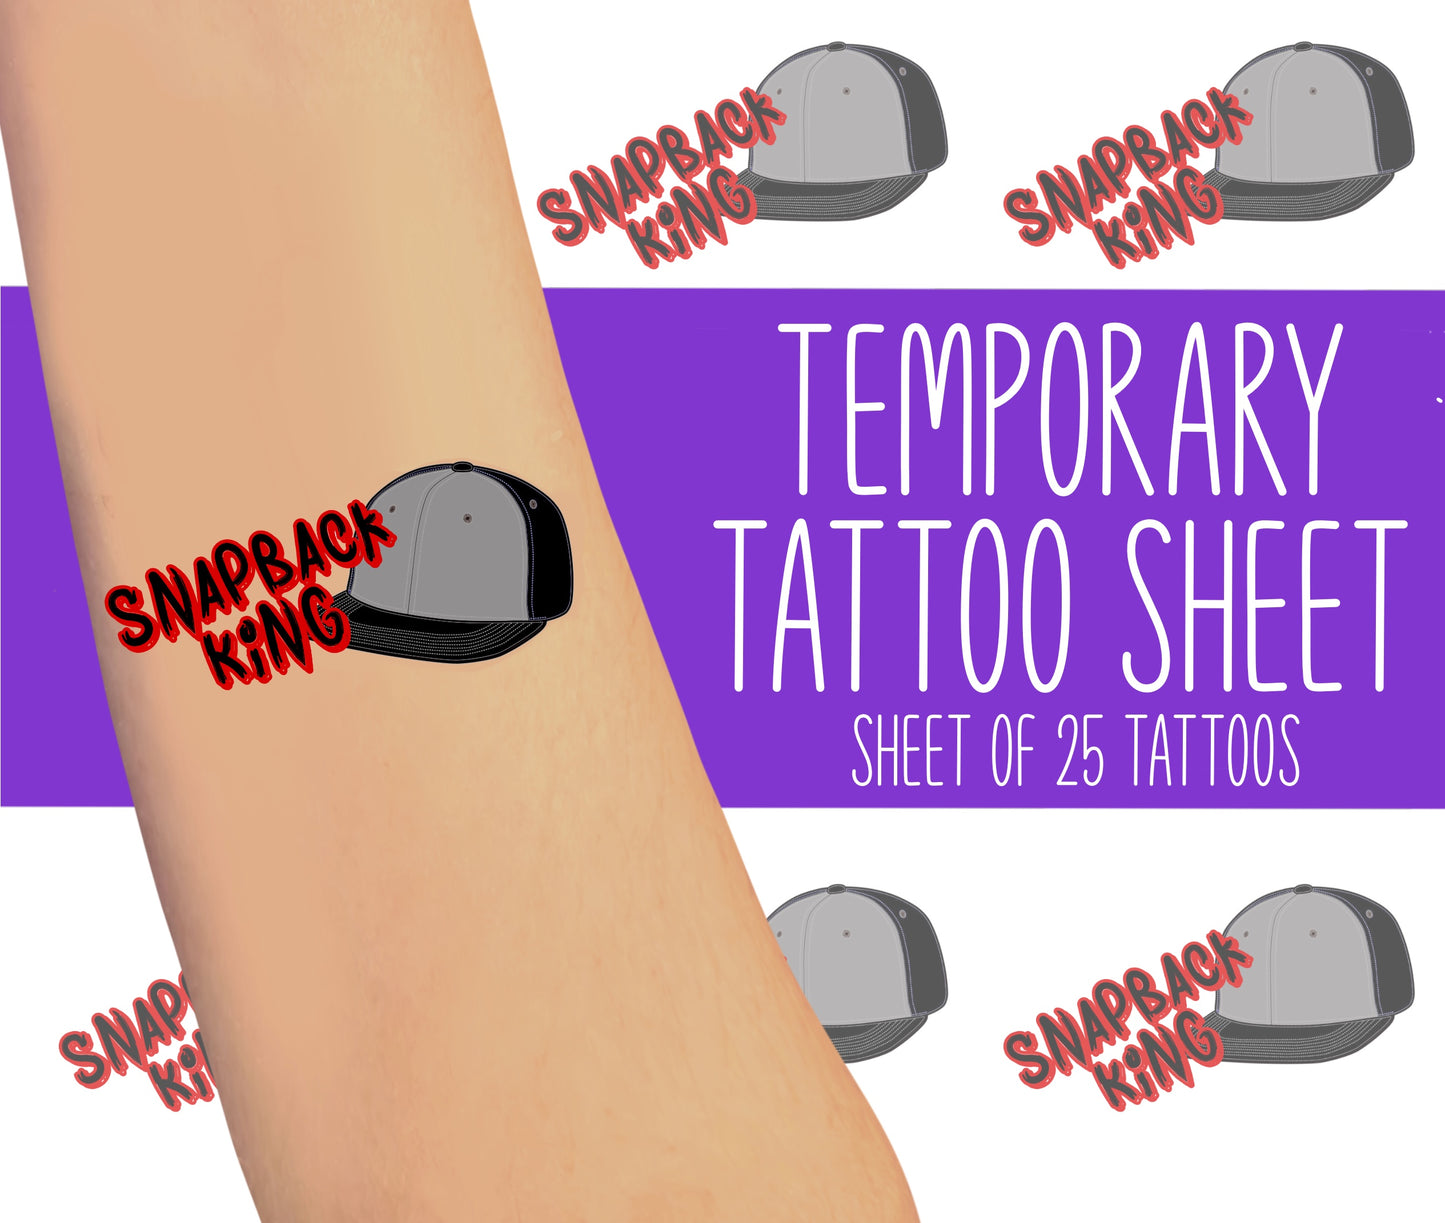 SnapBack King Tattoo Sheet